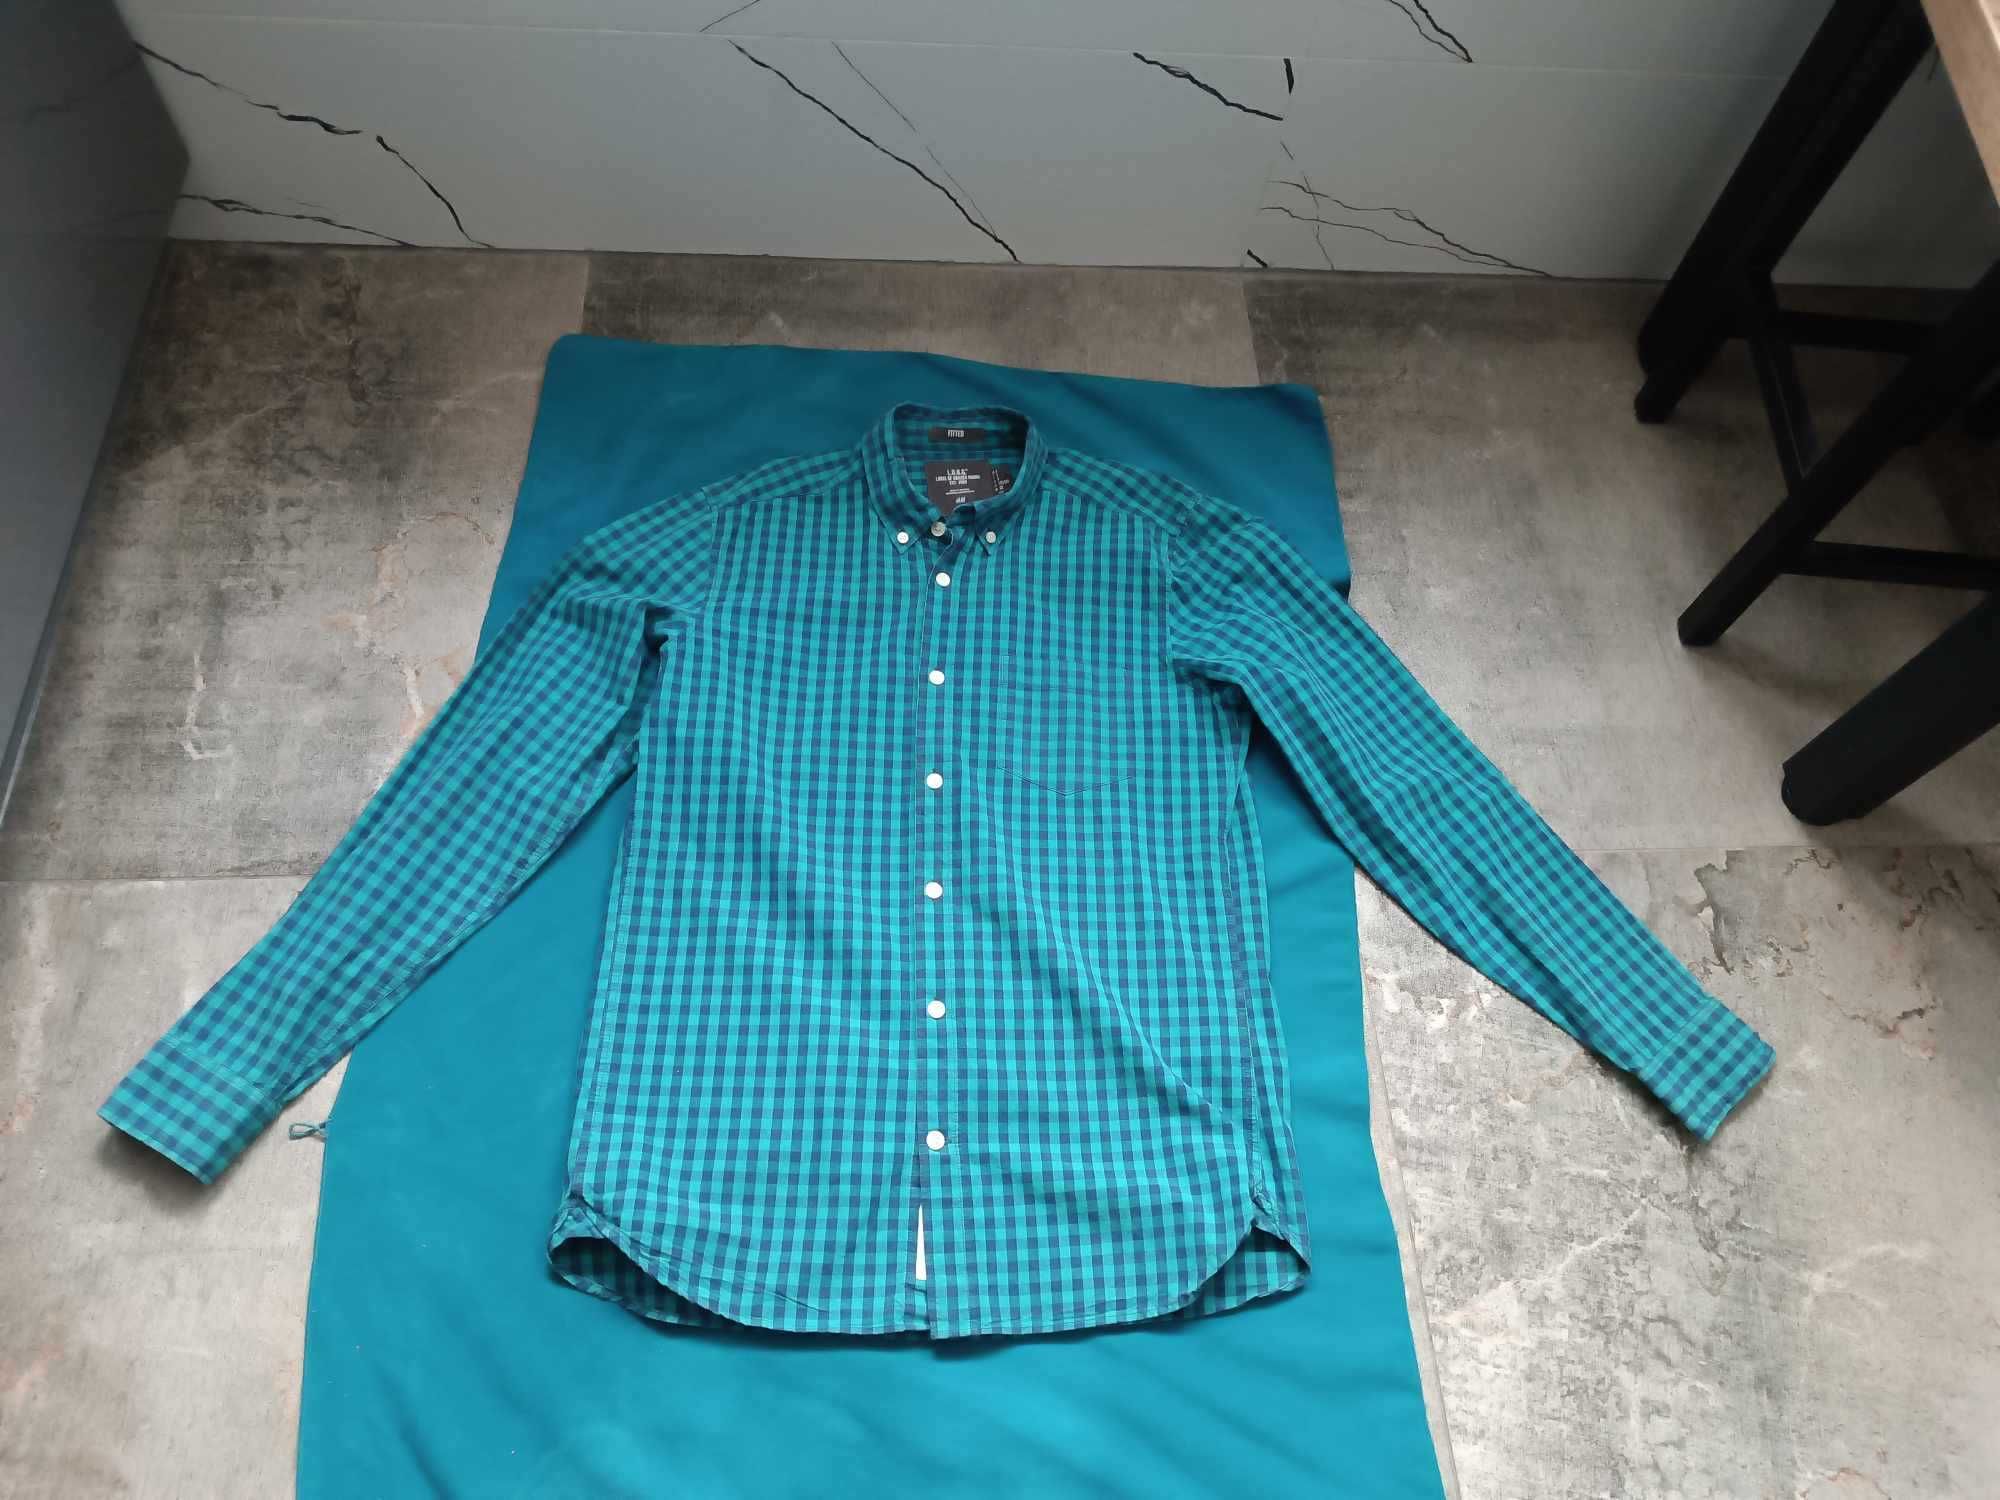 Koszula męska w kratkę - 100% bawełna, długi rękaw - S/M - "H&M".